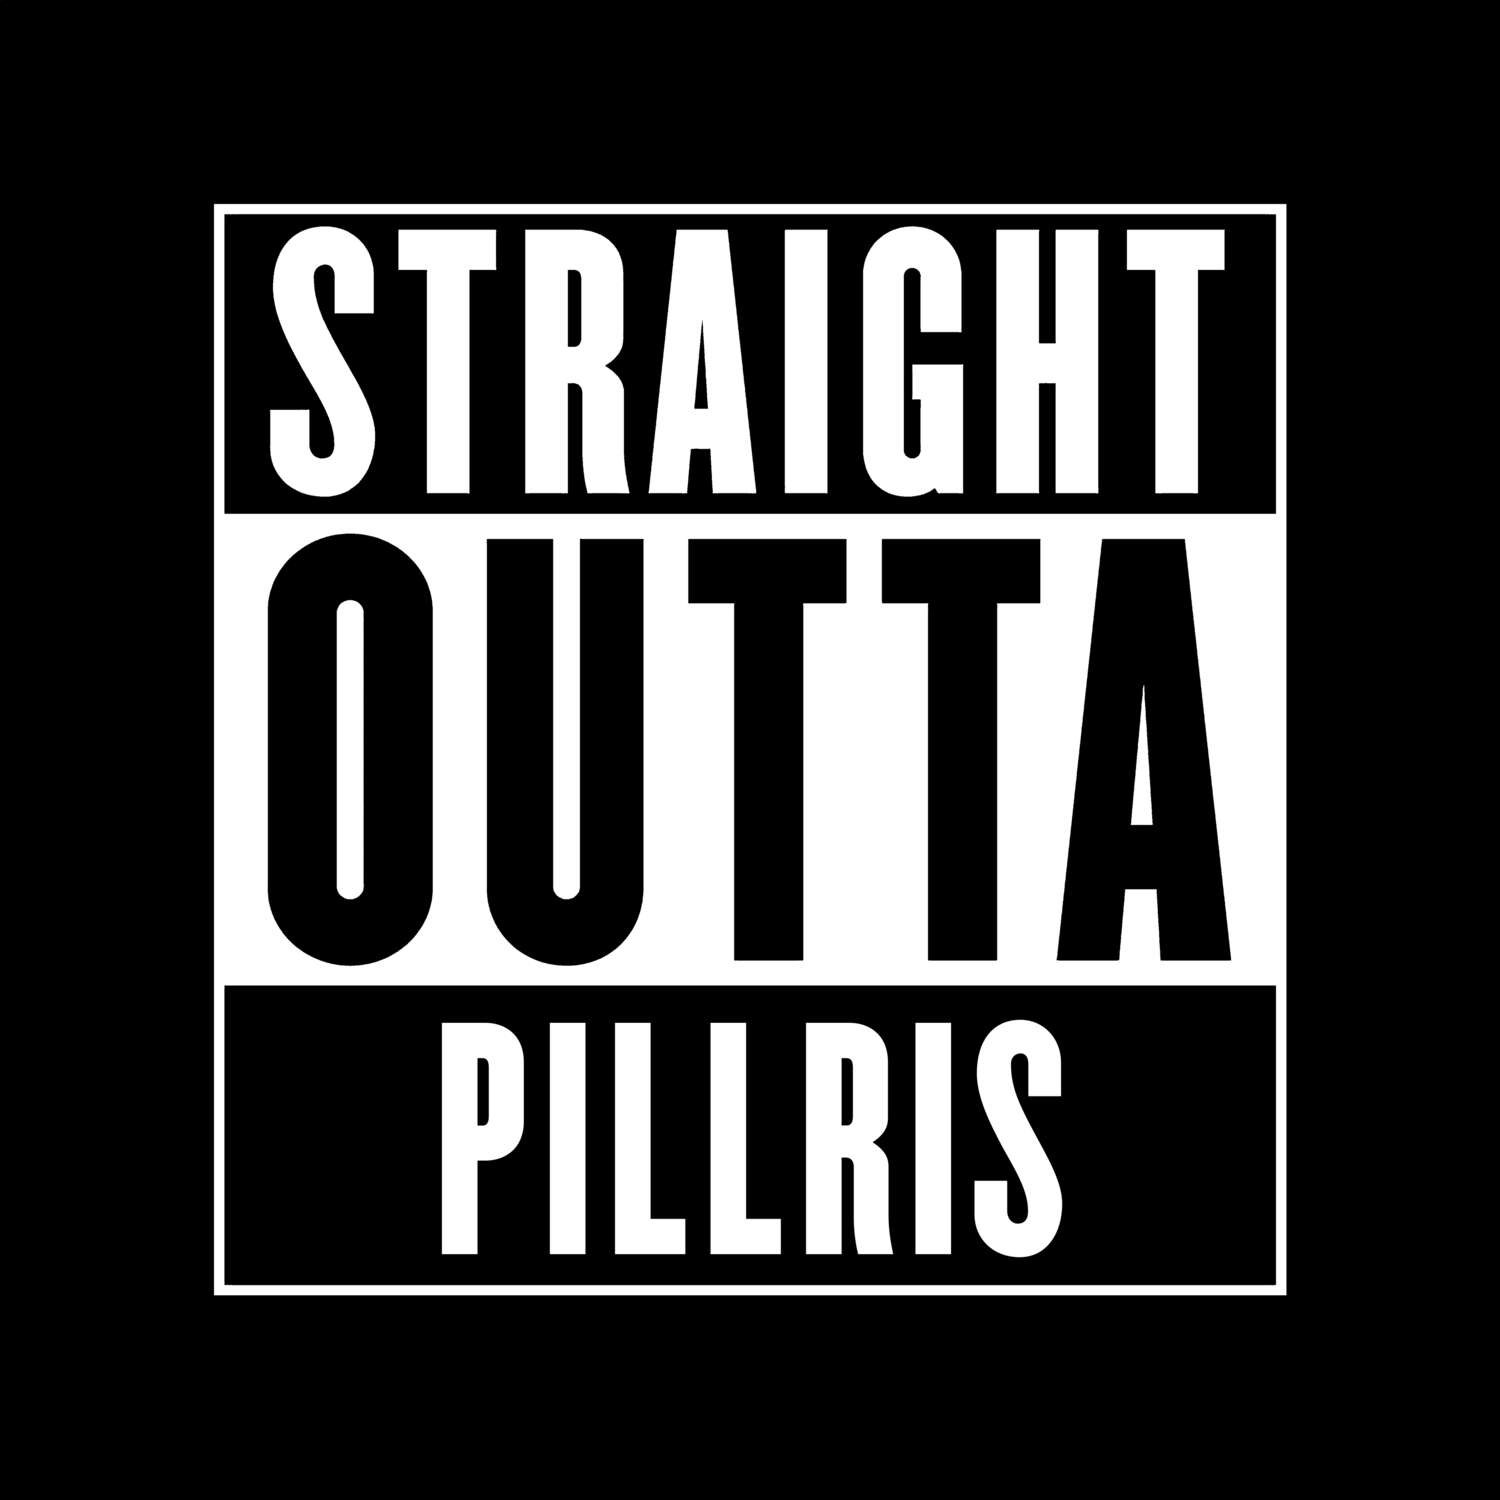 Pillris T-Shirt »Straight Outta«